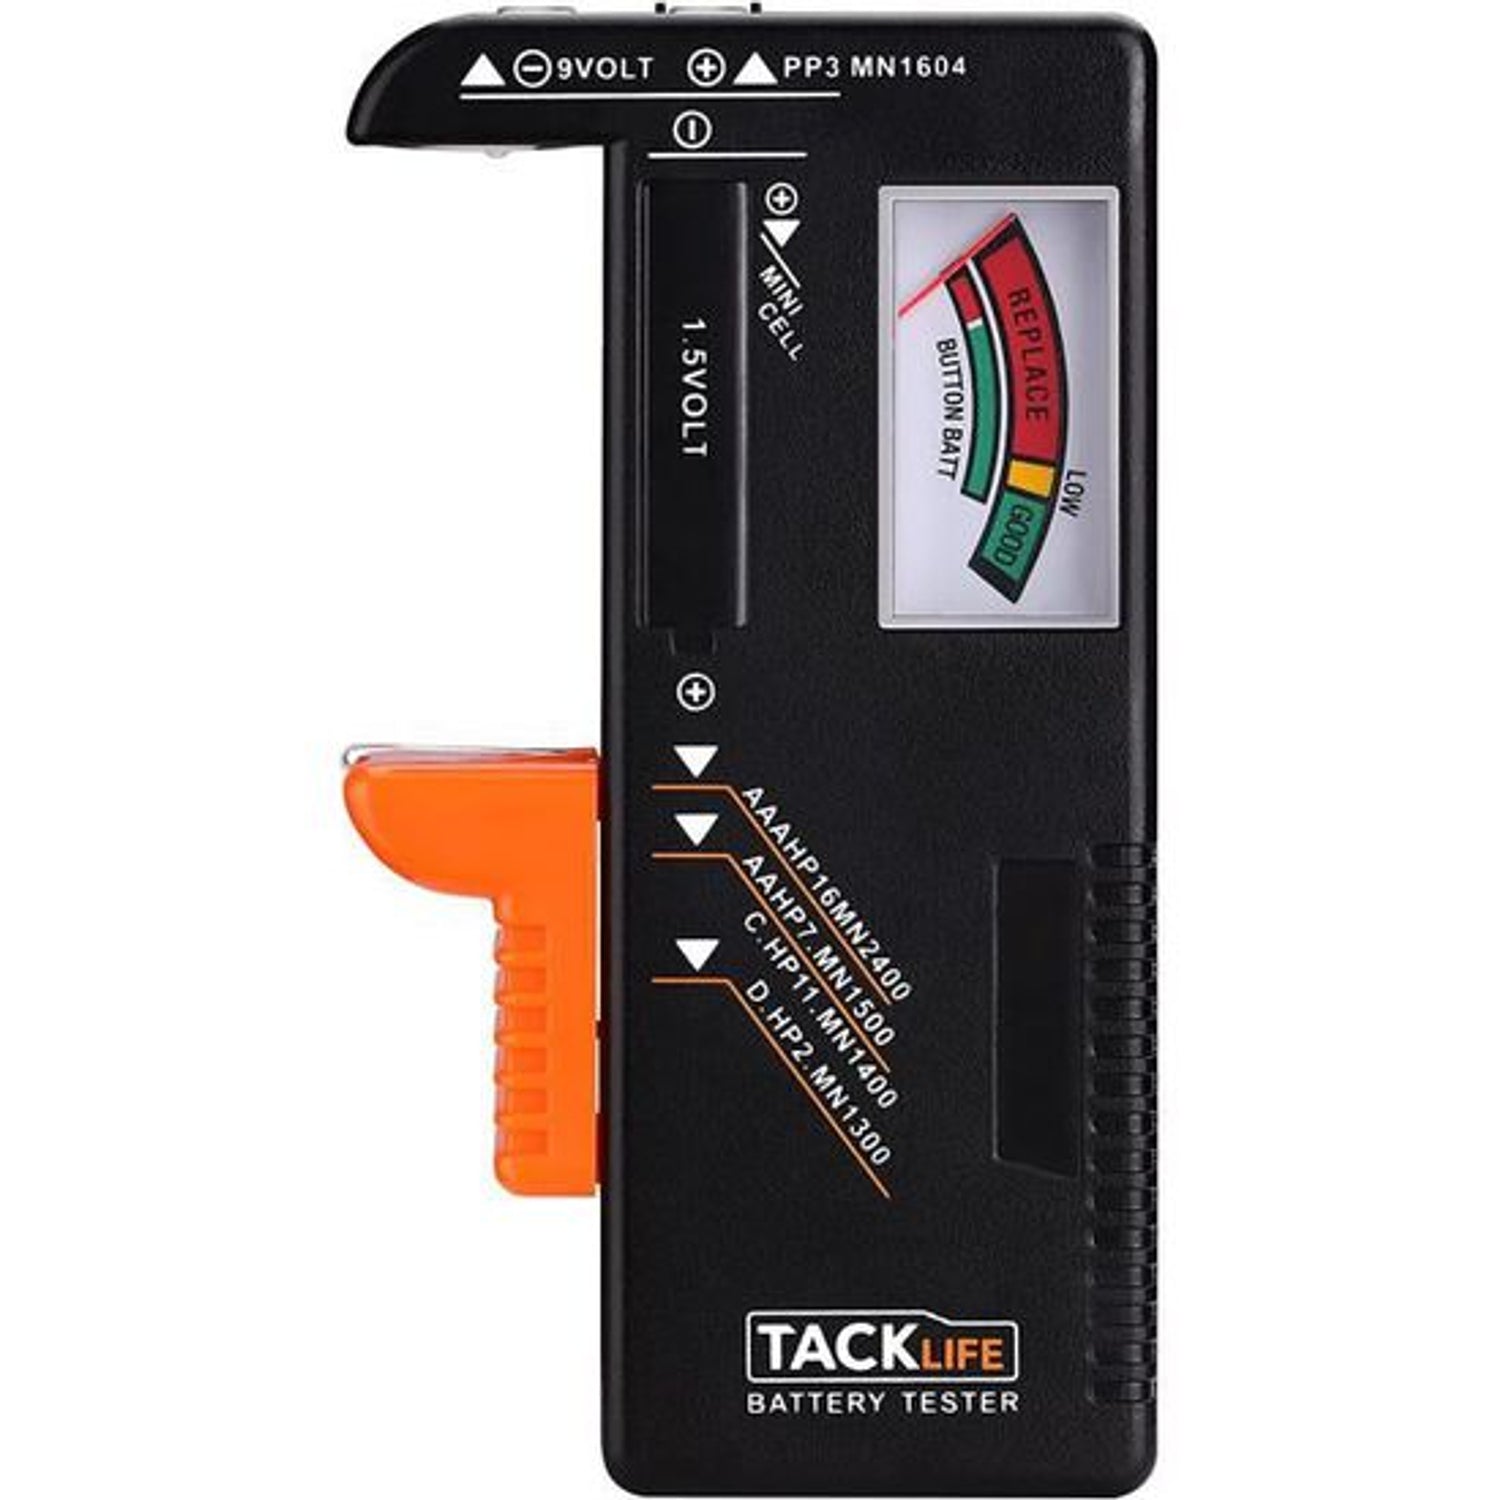 TACKLIFE MBT01, Klassischer Batterietester, ideal für den Hausgebrauch